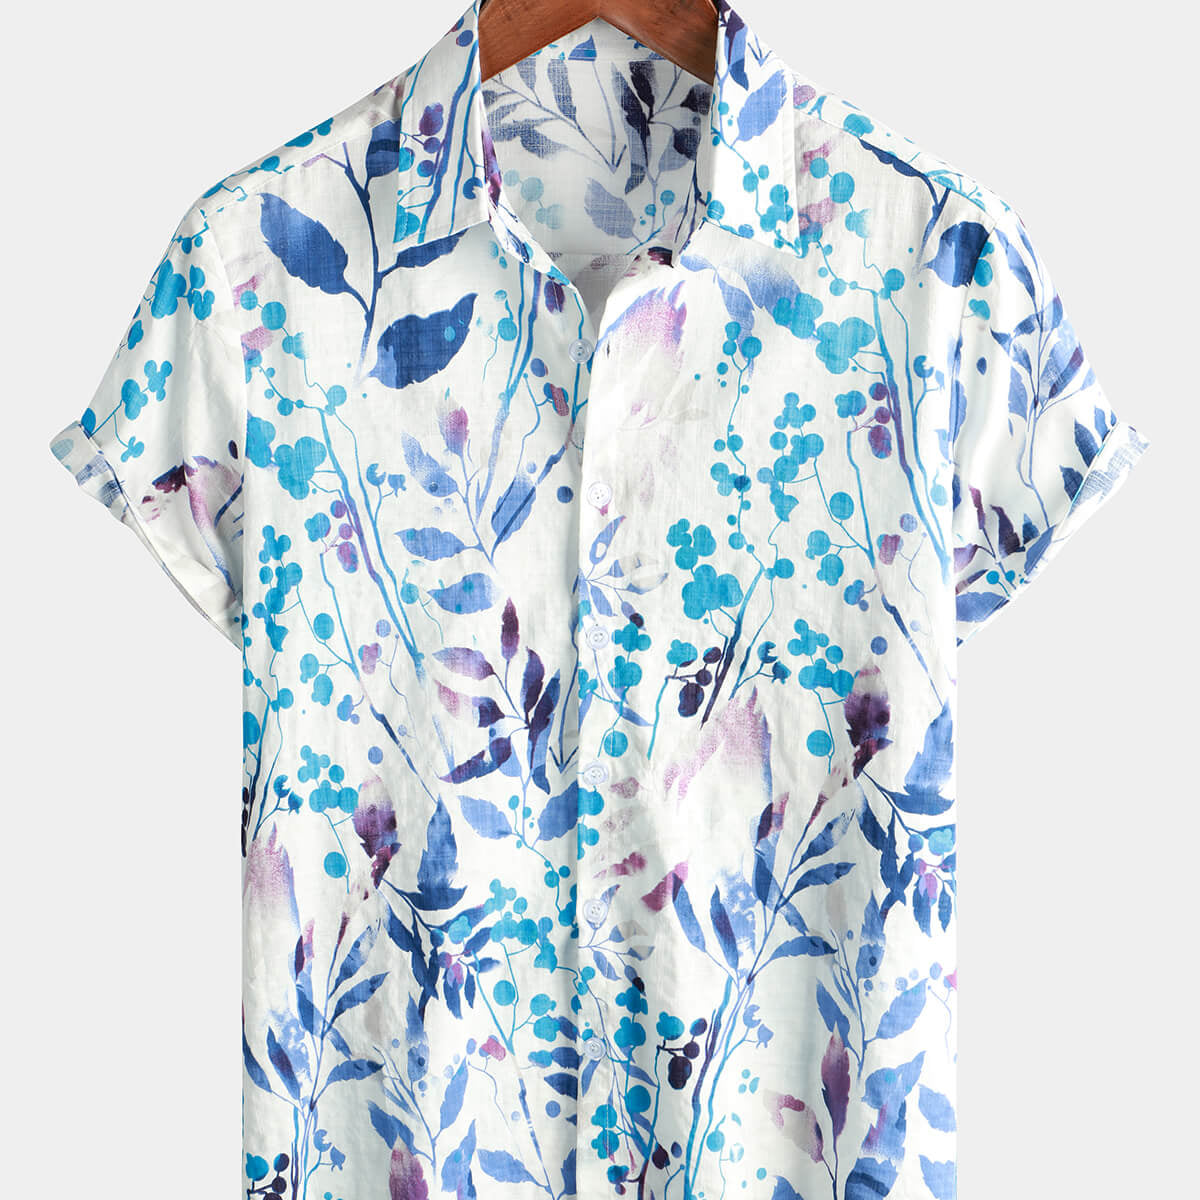 Camisa hawaiana de manga corta Aloha floral azul con botones tropicales de playa de algodón para hombre